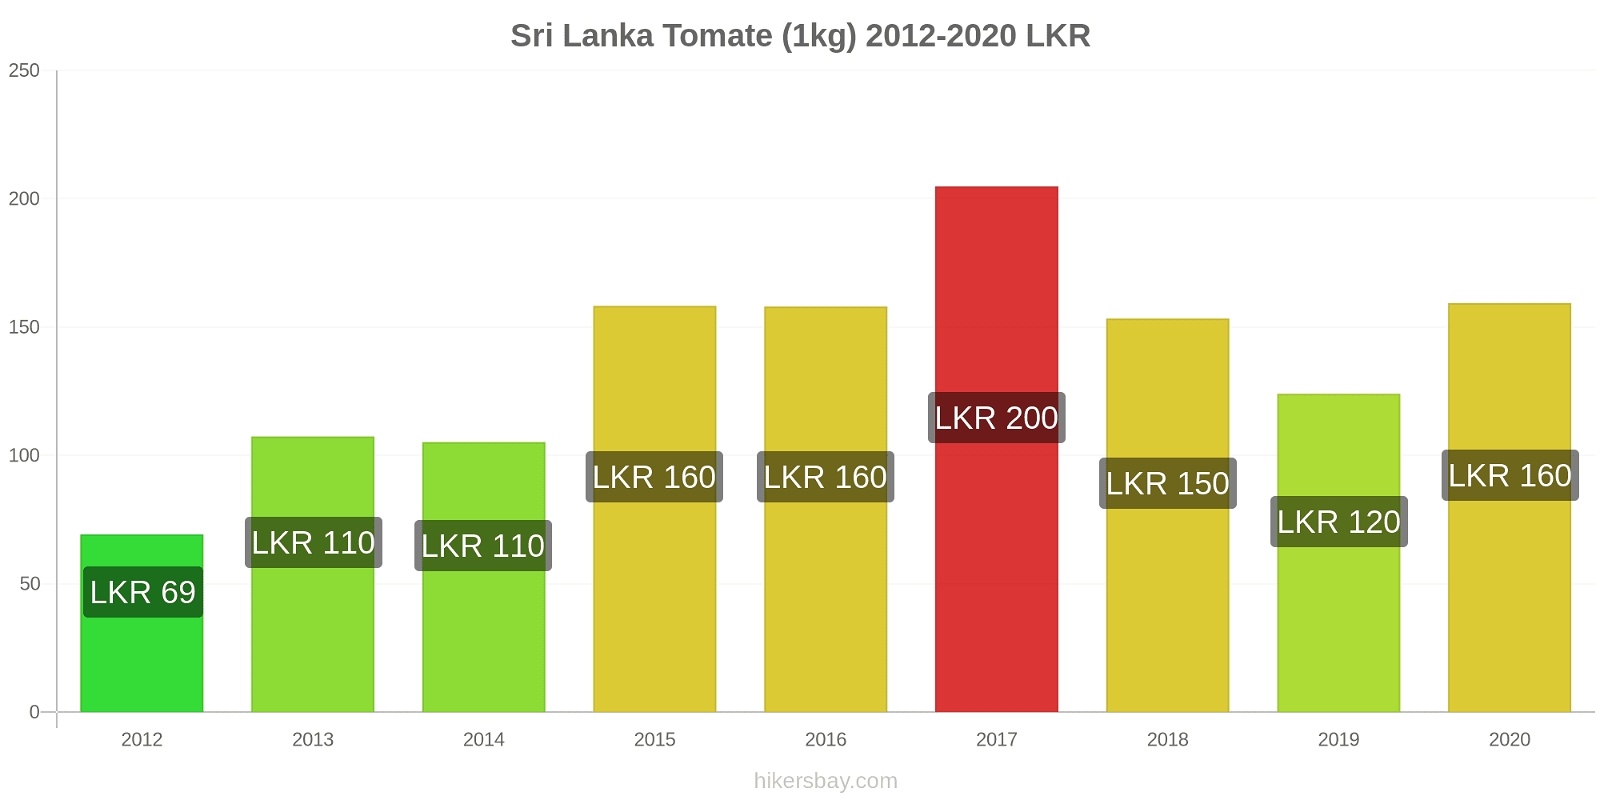 Sri Lanka variação de preço Tomate (1kg) hikersbay.com